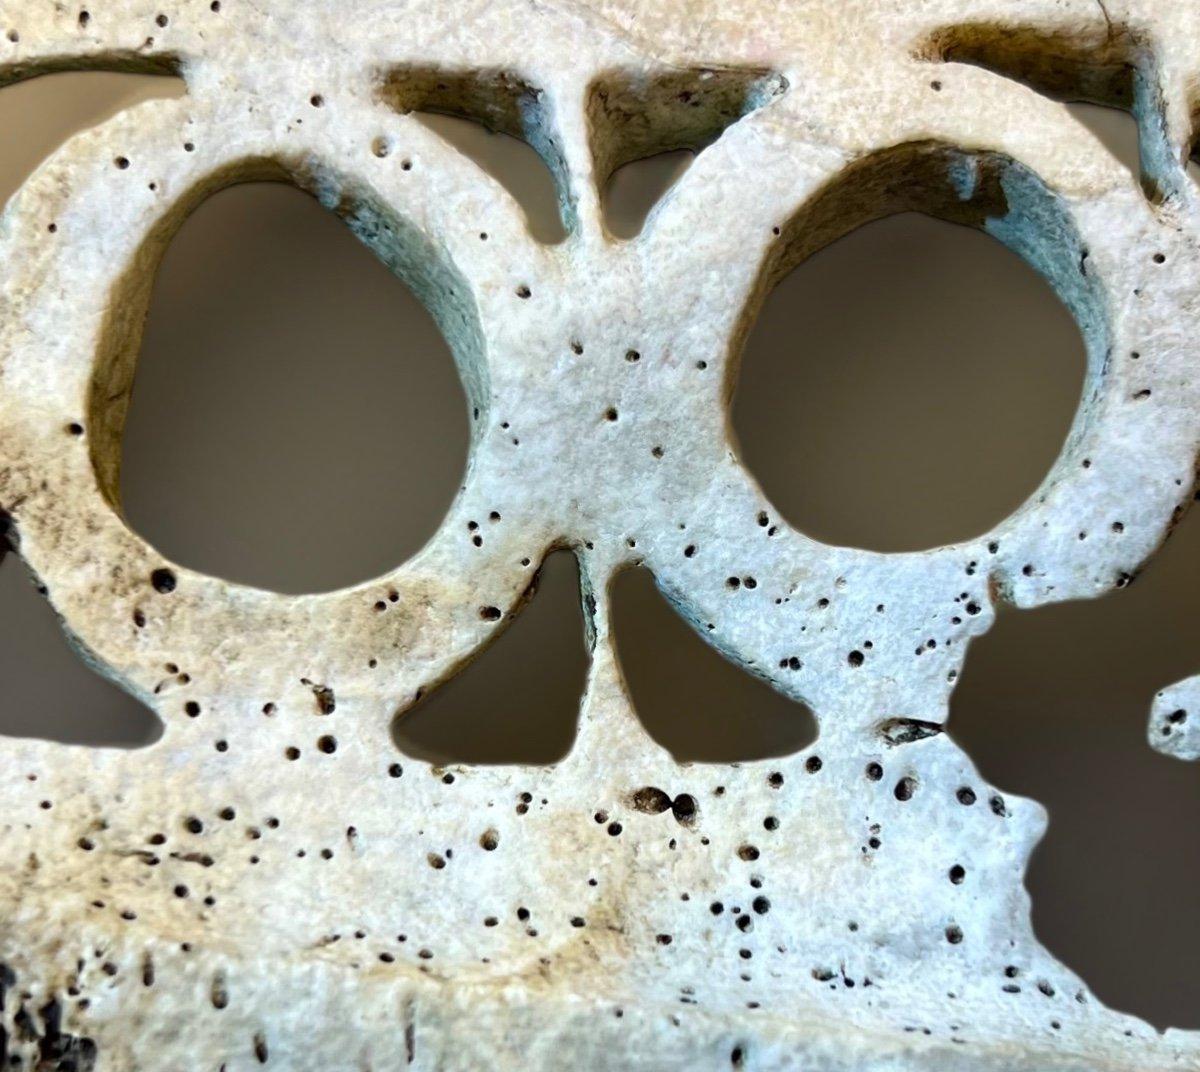 Les objets fabriqués à partir de la coquille de la palourde géante Tridacna, également connue sous le nom de palourde géante fossilisée, avaient une grande valeur pour de nombreux peuples mélanésiens. L'art de travailler le Tridacna fossilisé a